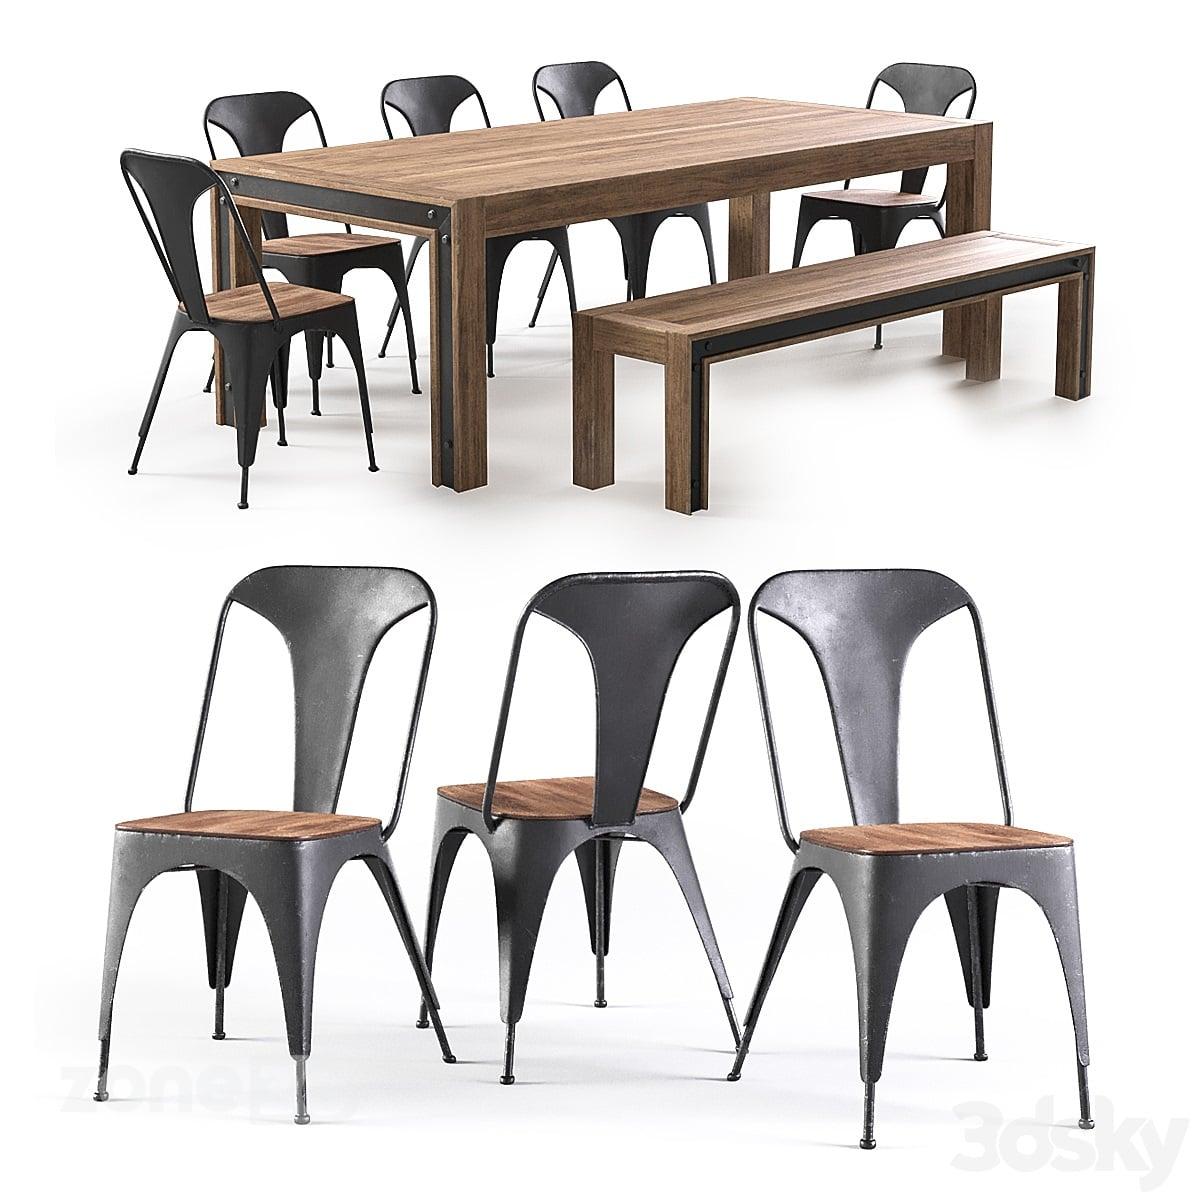 آبجکت ست میز مستطیل چوبی و فلزی صنعتی با نیمکت و صندلی فلزی Amos